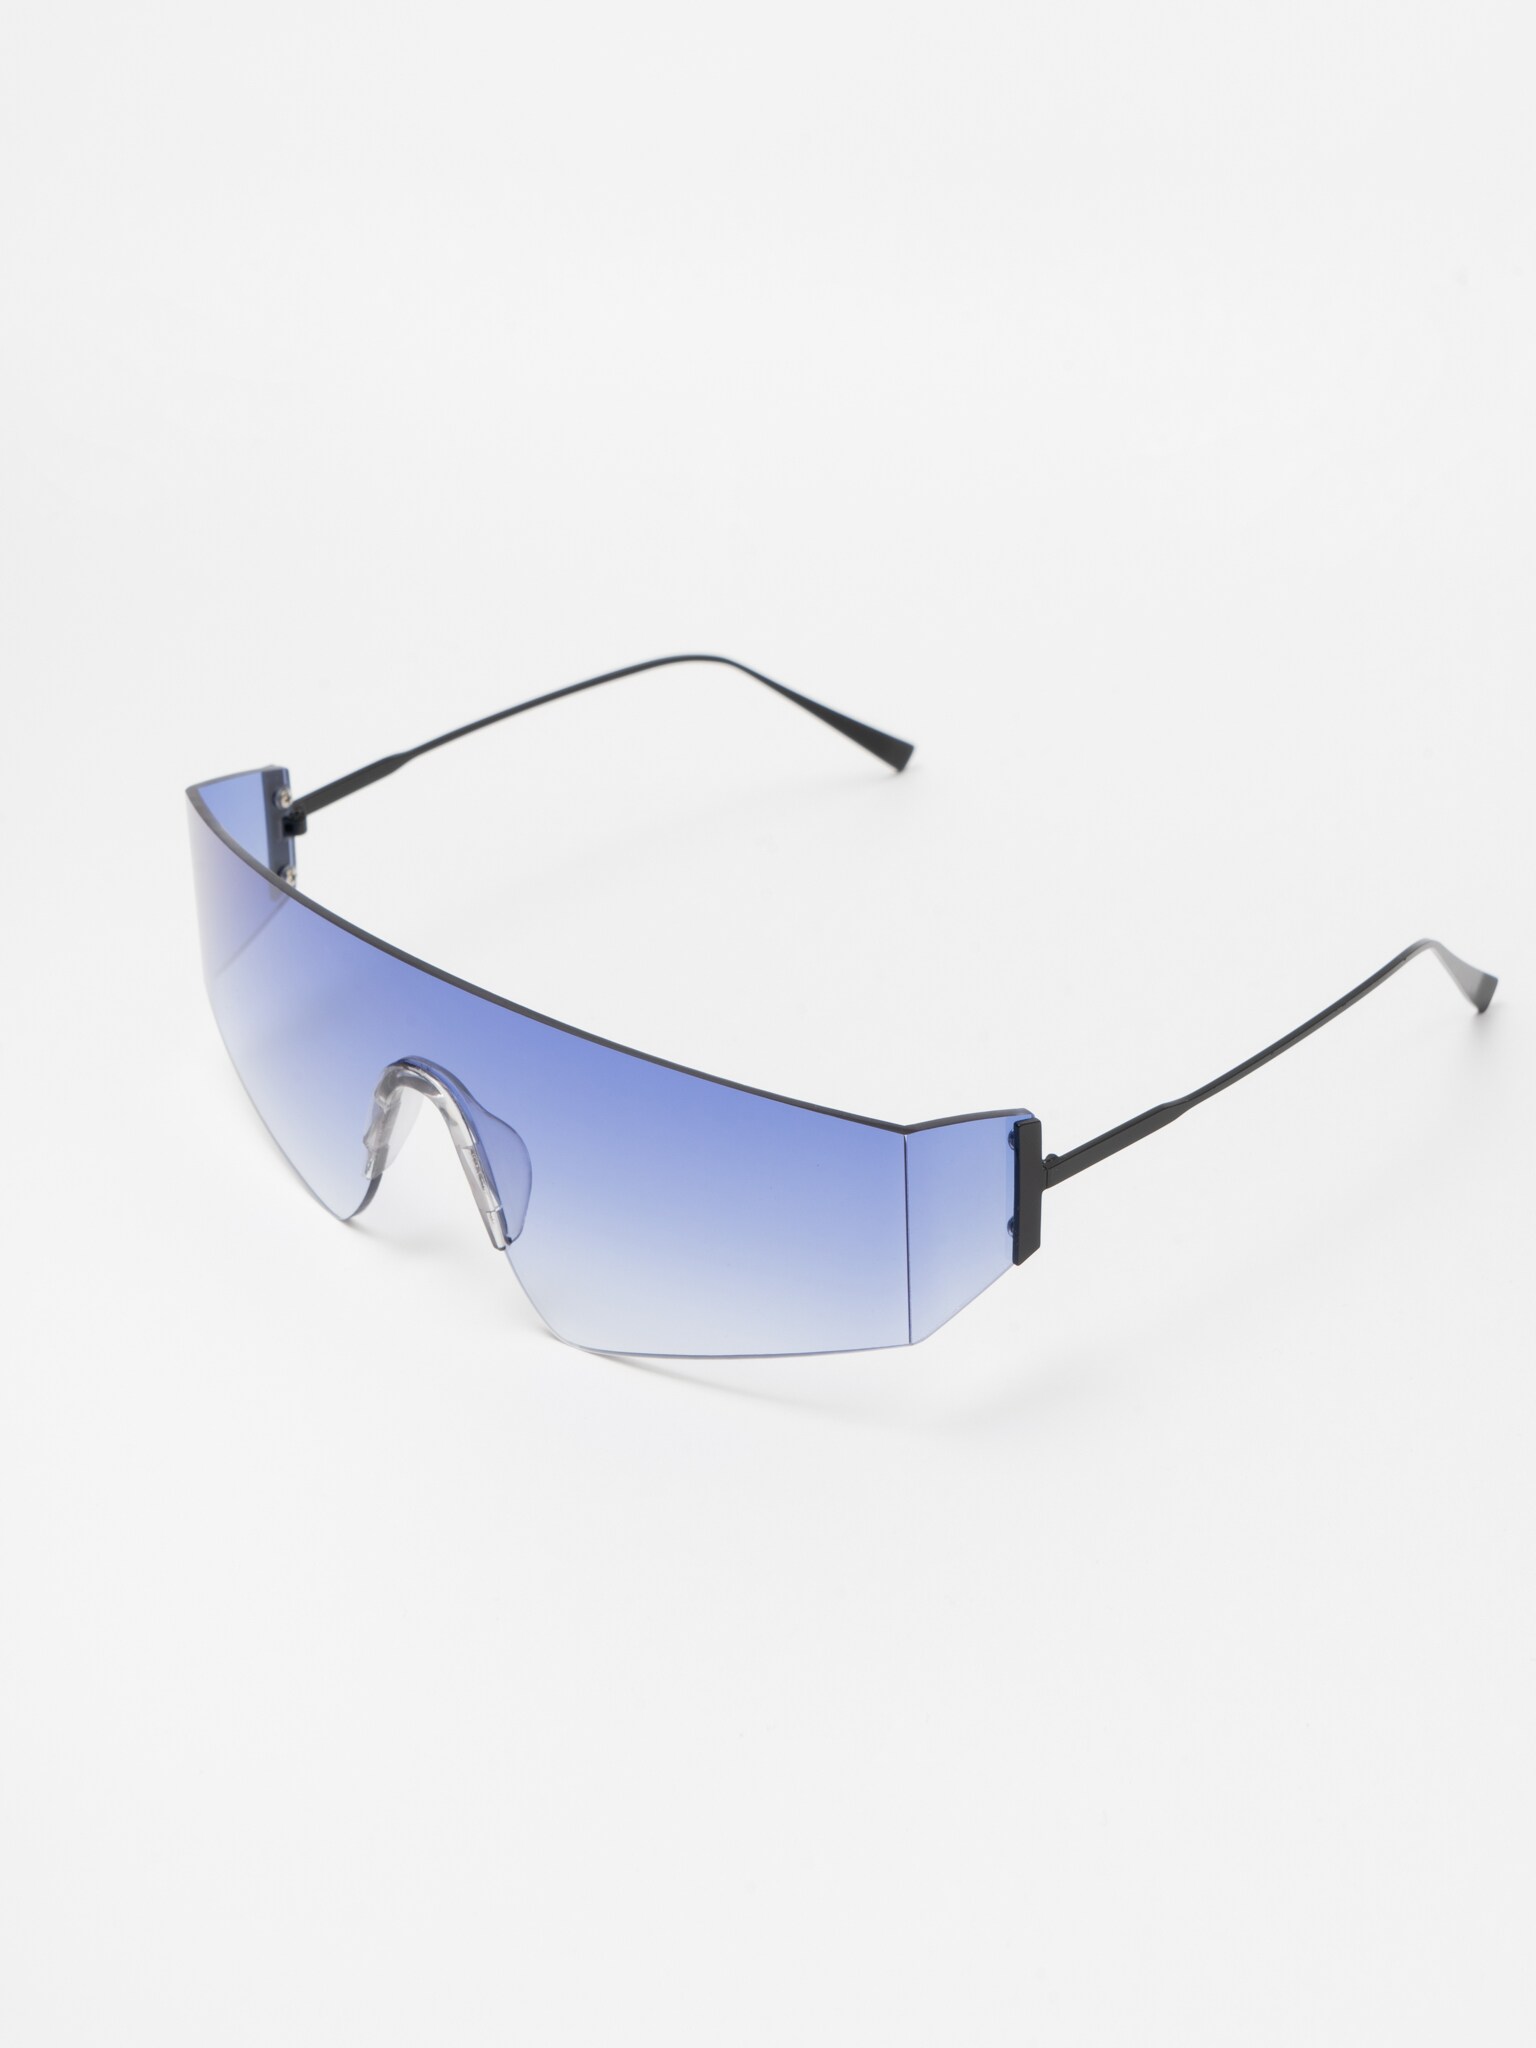 LICHI - Online fashion store :: Visor-style sunglasses